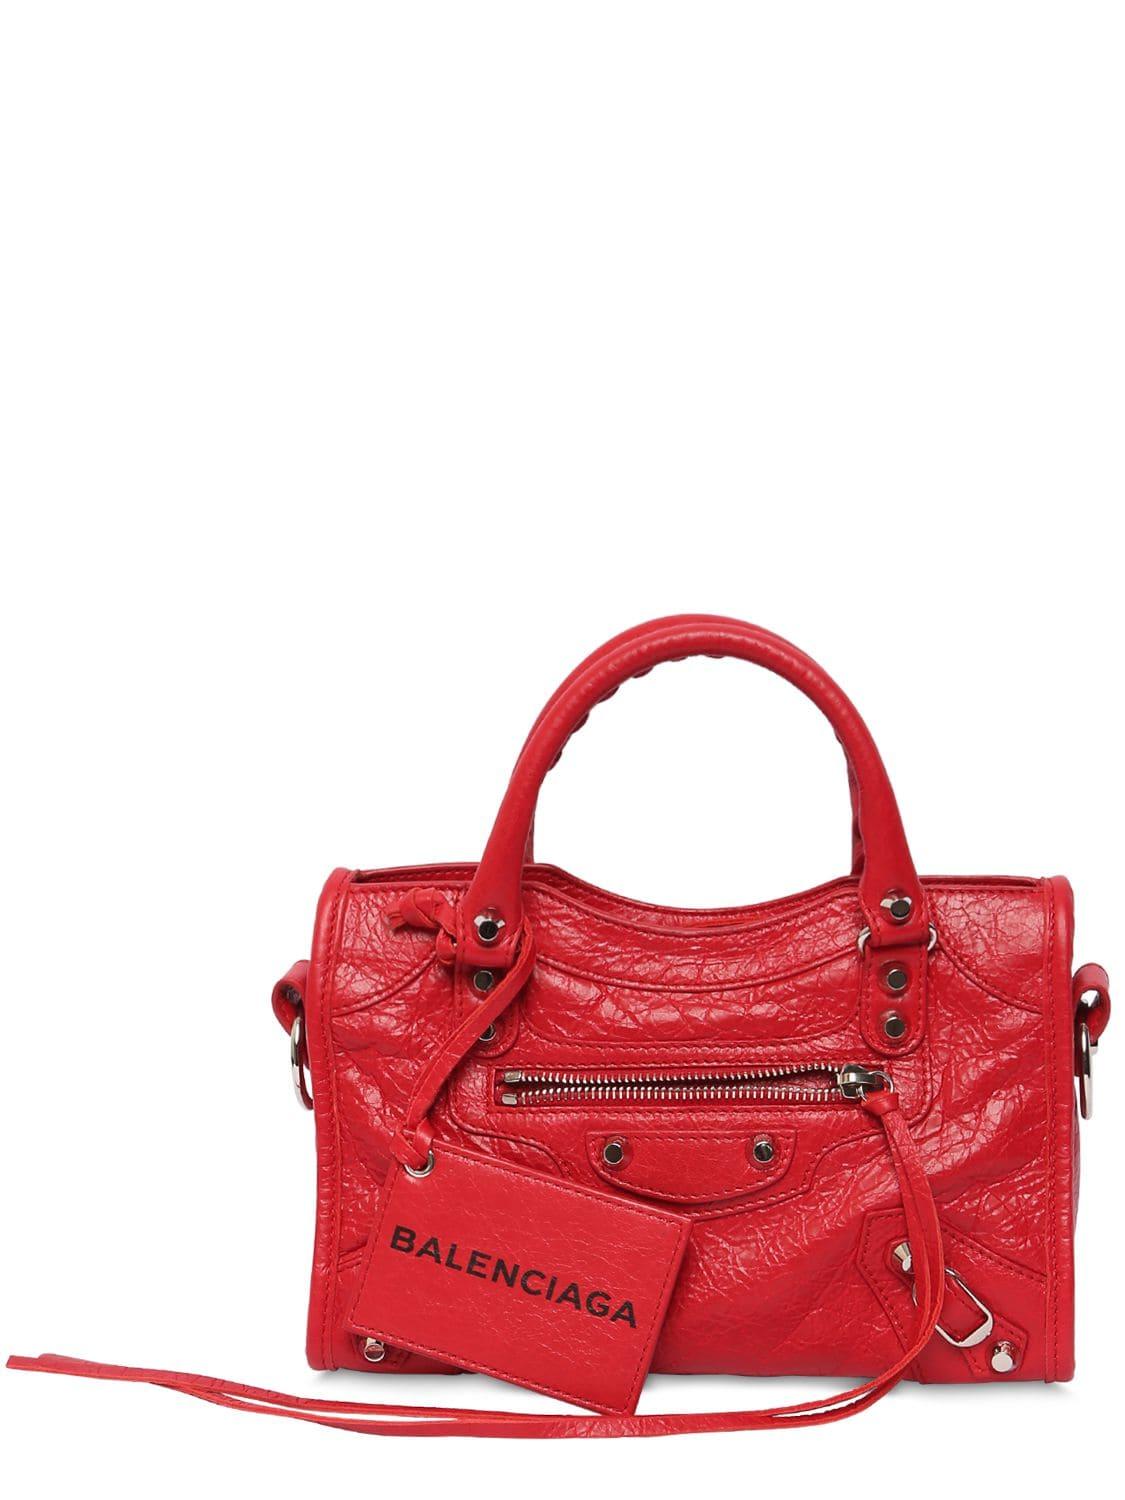 Balenciaga Handbag Straps | semashow.com